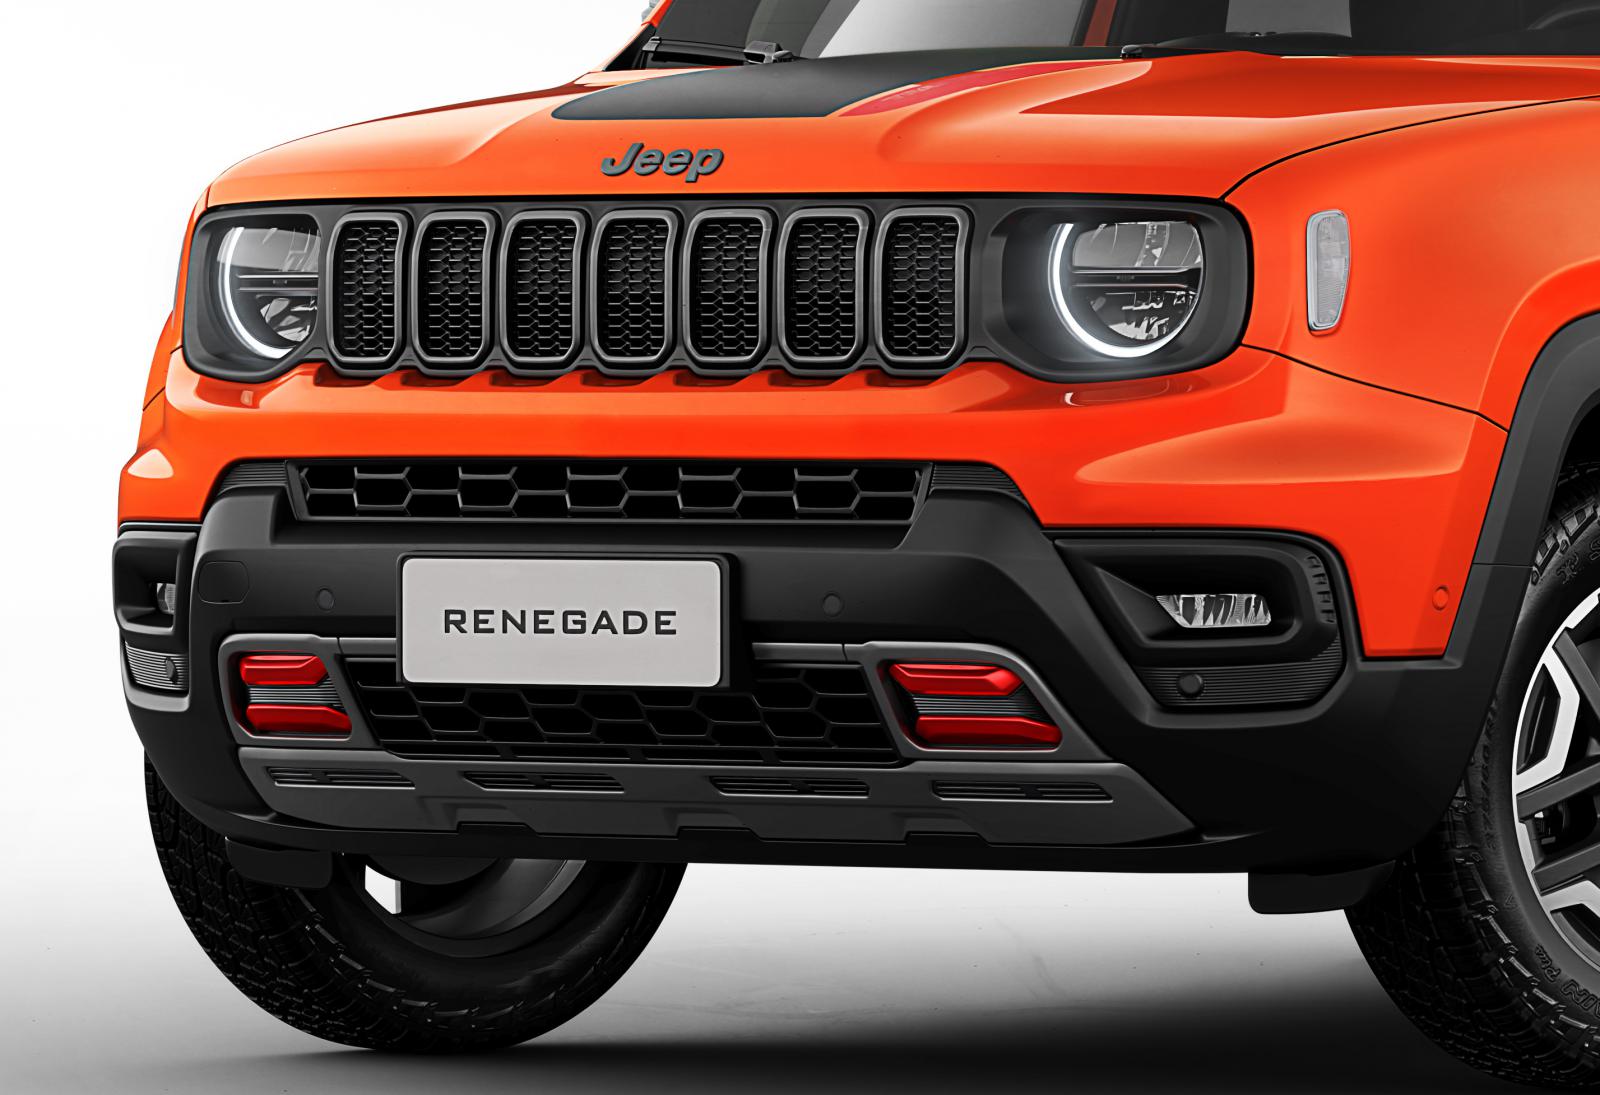 Νέα εμφάνιση & hi-tech το ανανεωμένο Jeep Renegade 